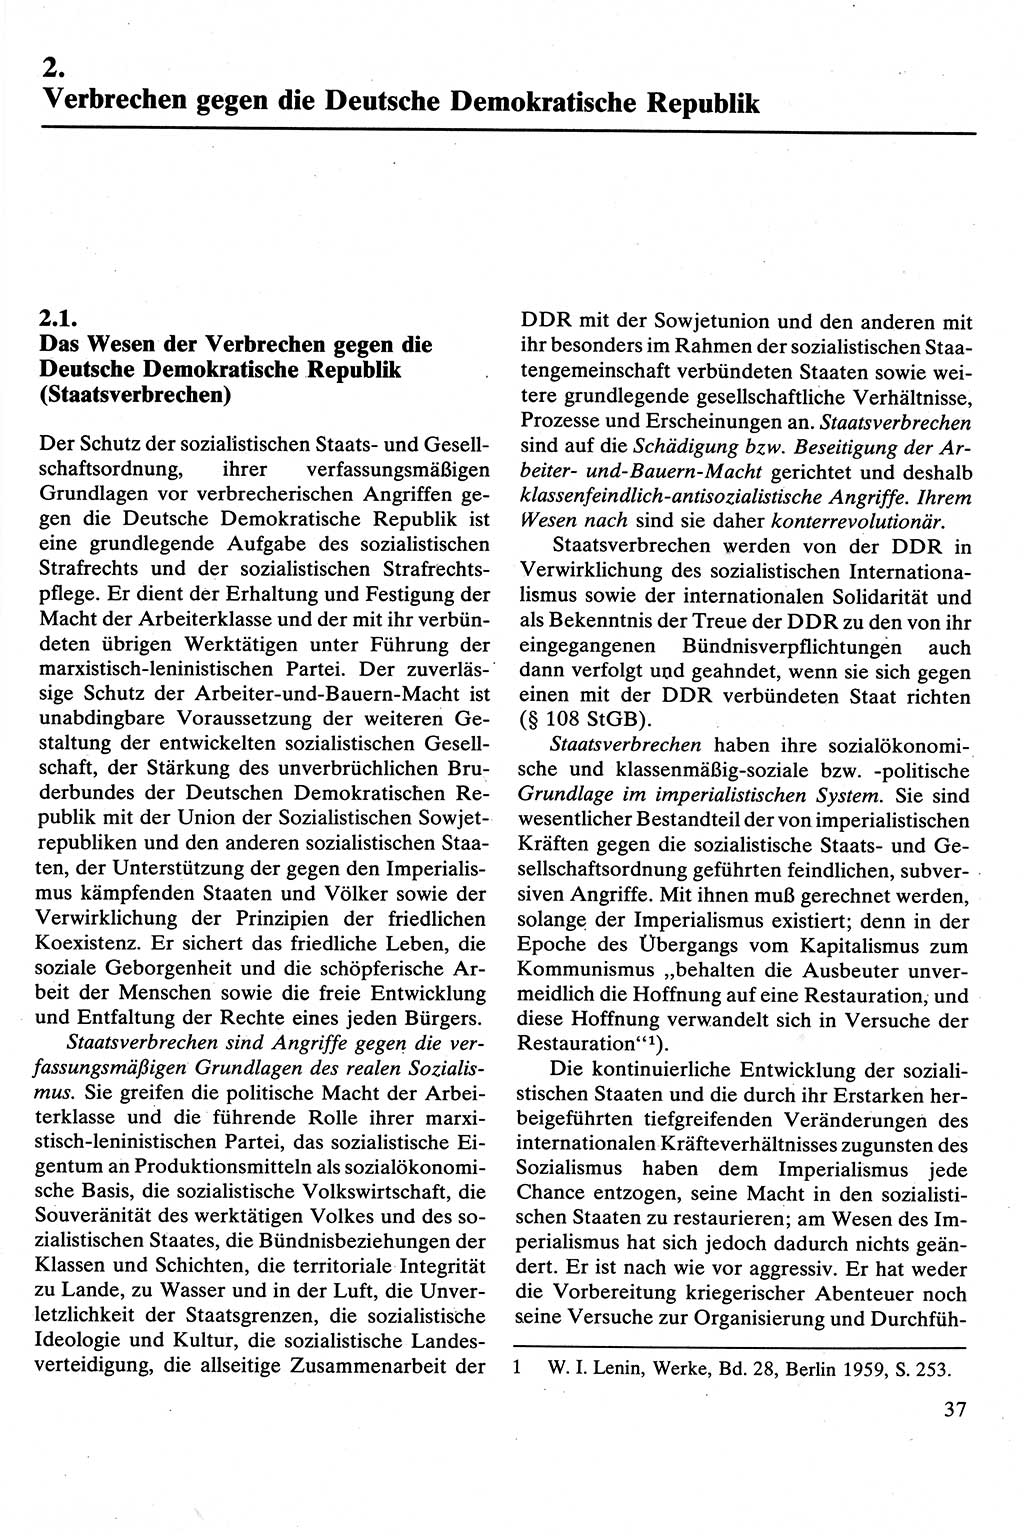 Strafrecht [Deutsche Demokratische Republik (DDR)], Besonderer Teil, Lehrbuch 1981, Seite 37 (Strafr. DDR BT Lb. 1981, S. 37)